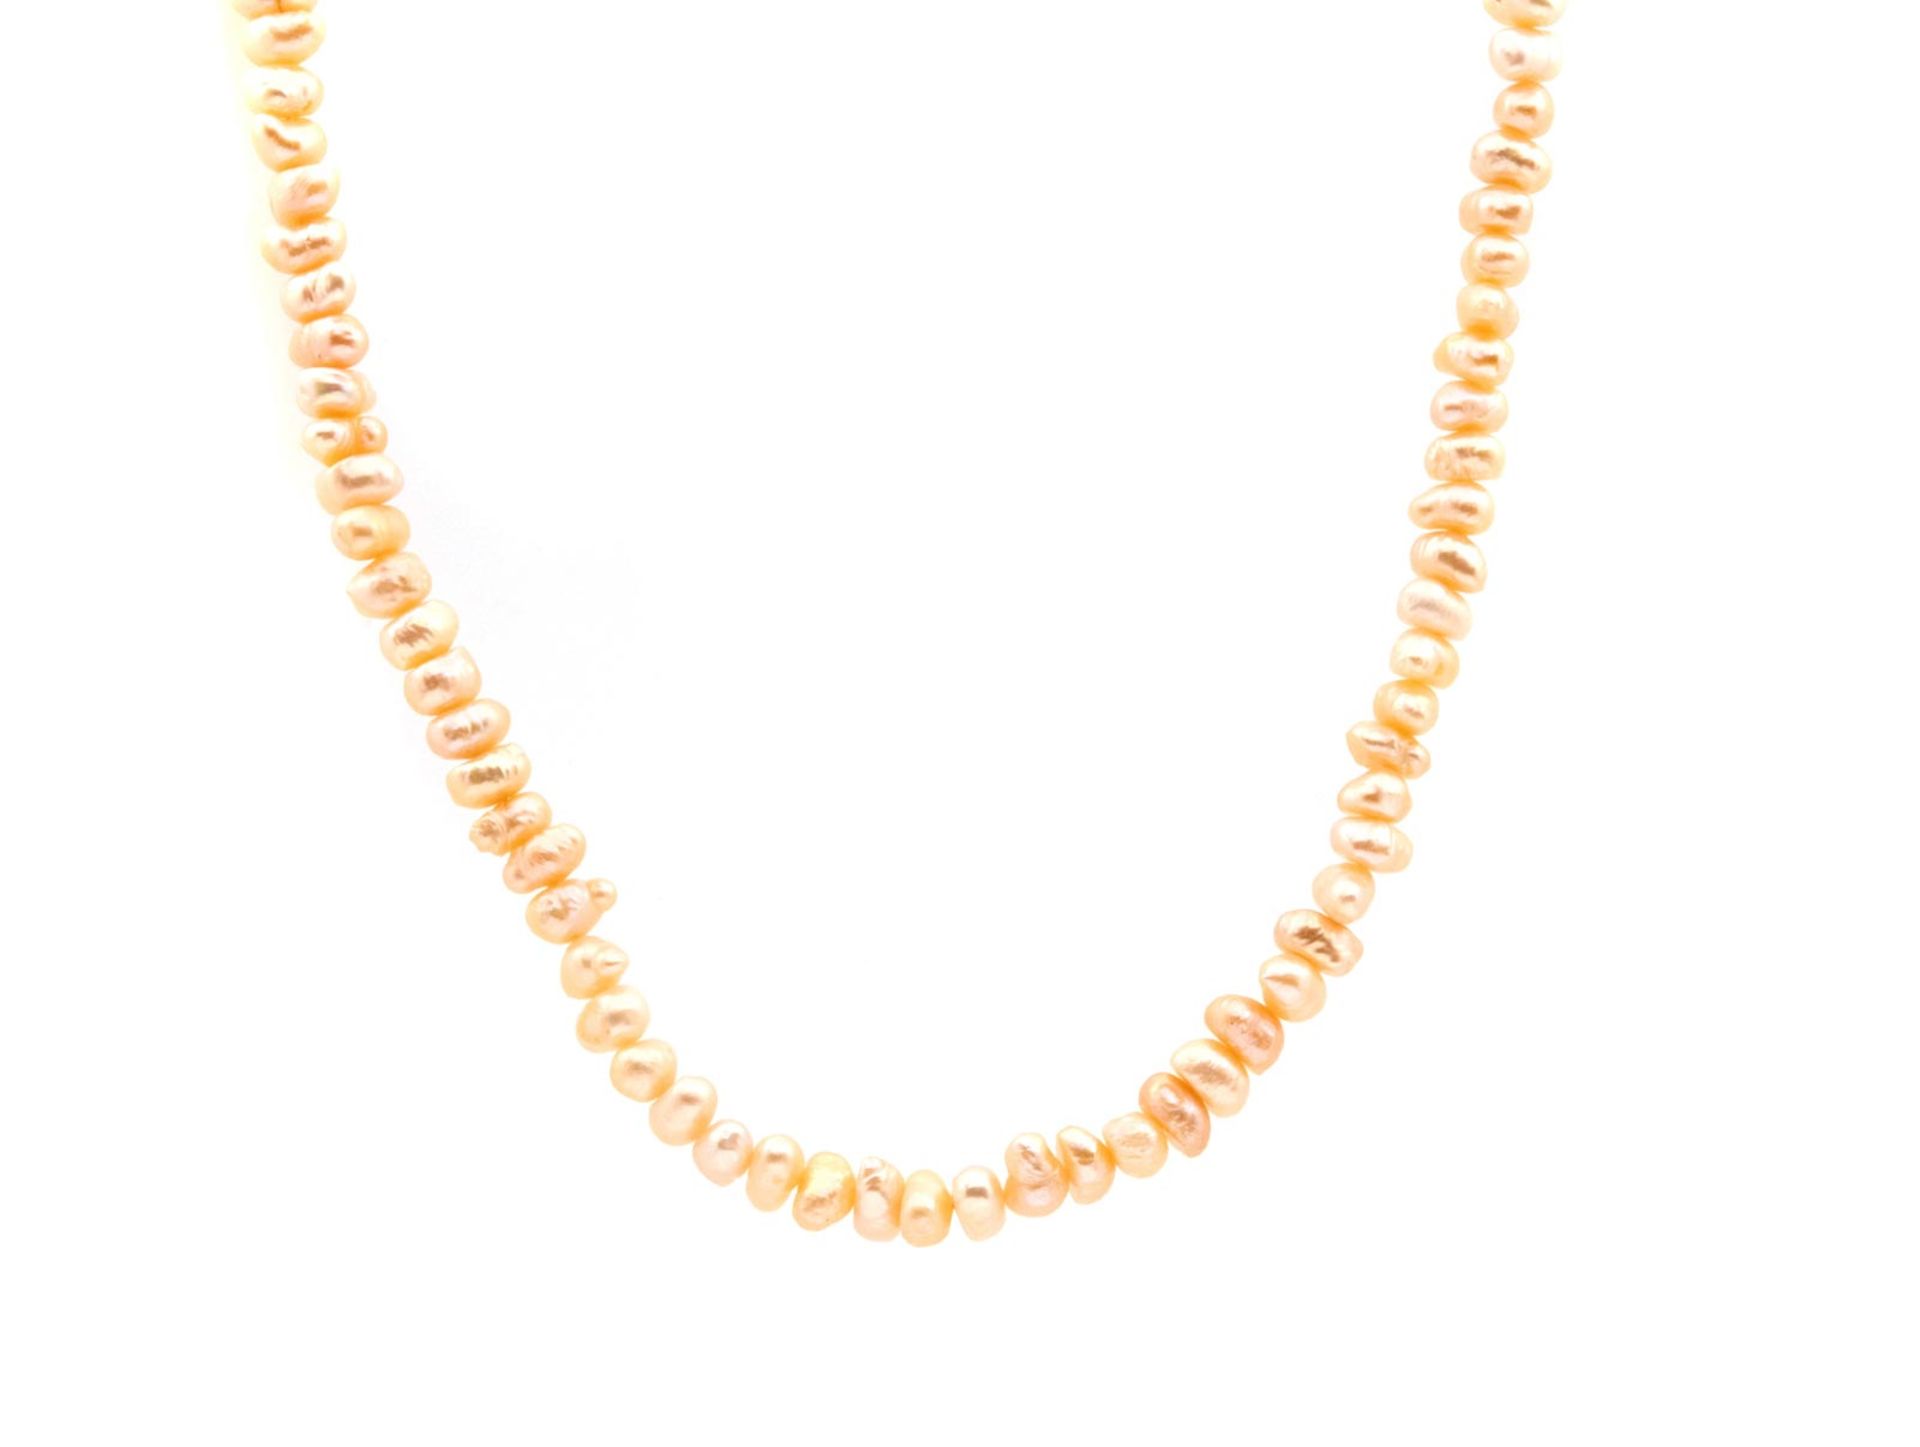 NECKLACE De perlas de río y cierre en oro. 122 cm. largo y 79,9 gr.